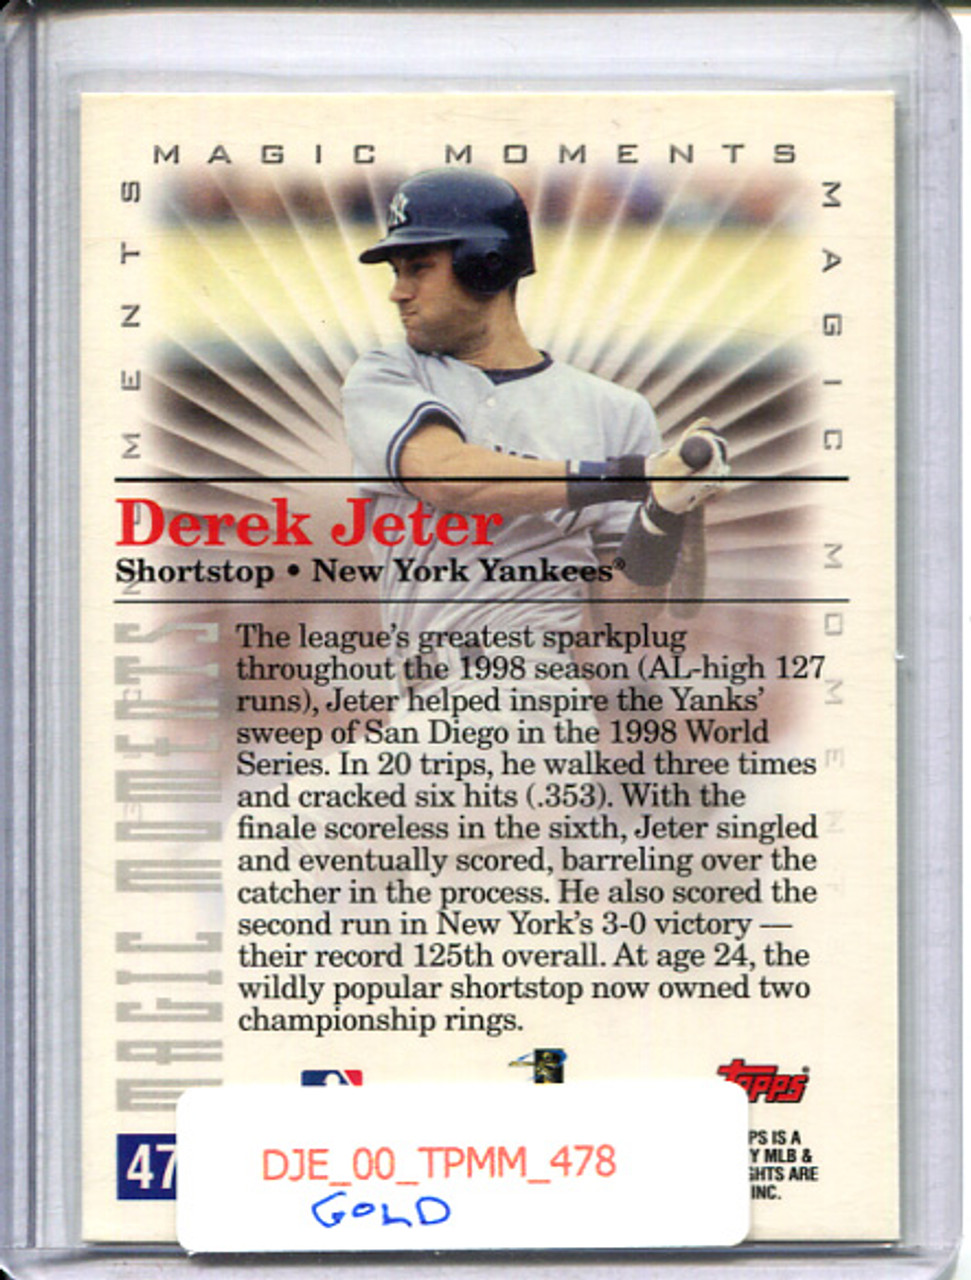 Derek Jeter 2000 Topps #478 Magic Moments 1998 World Series Gold